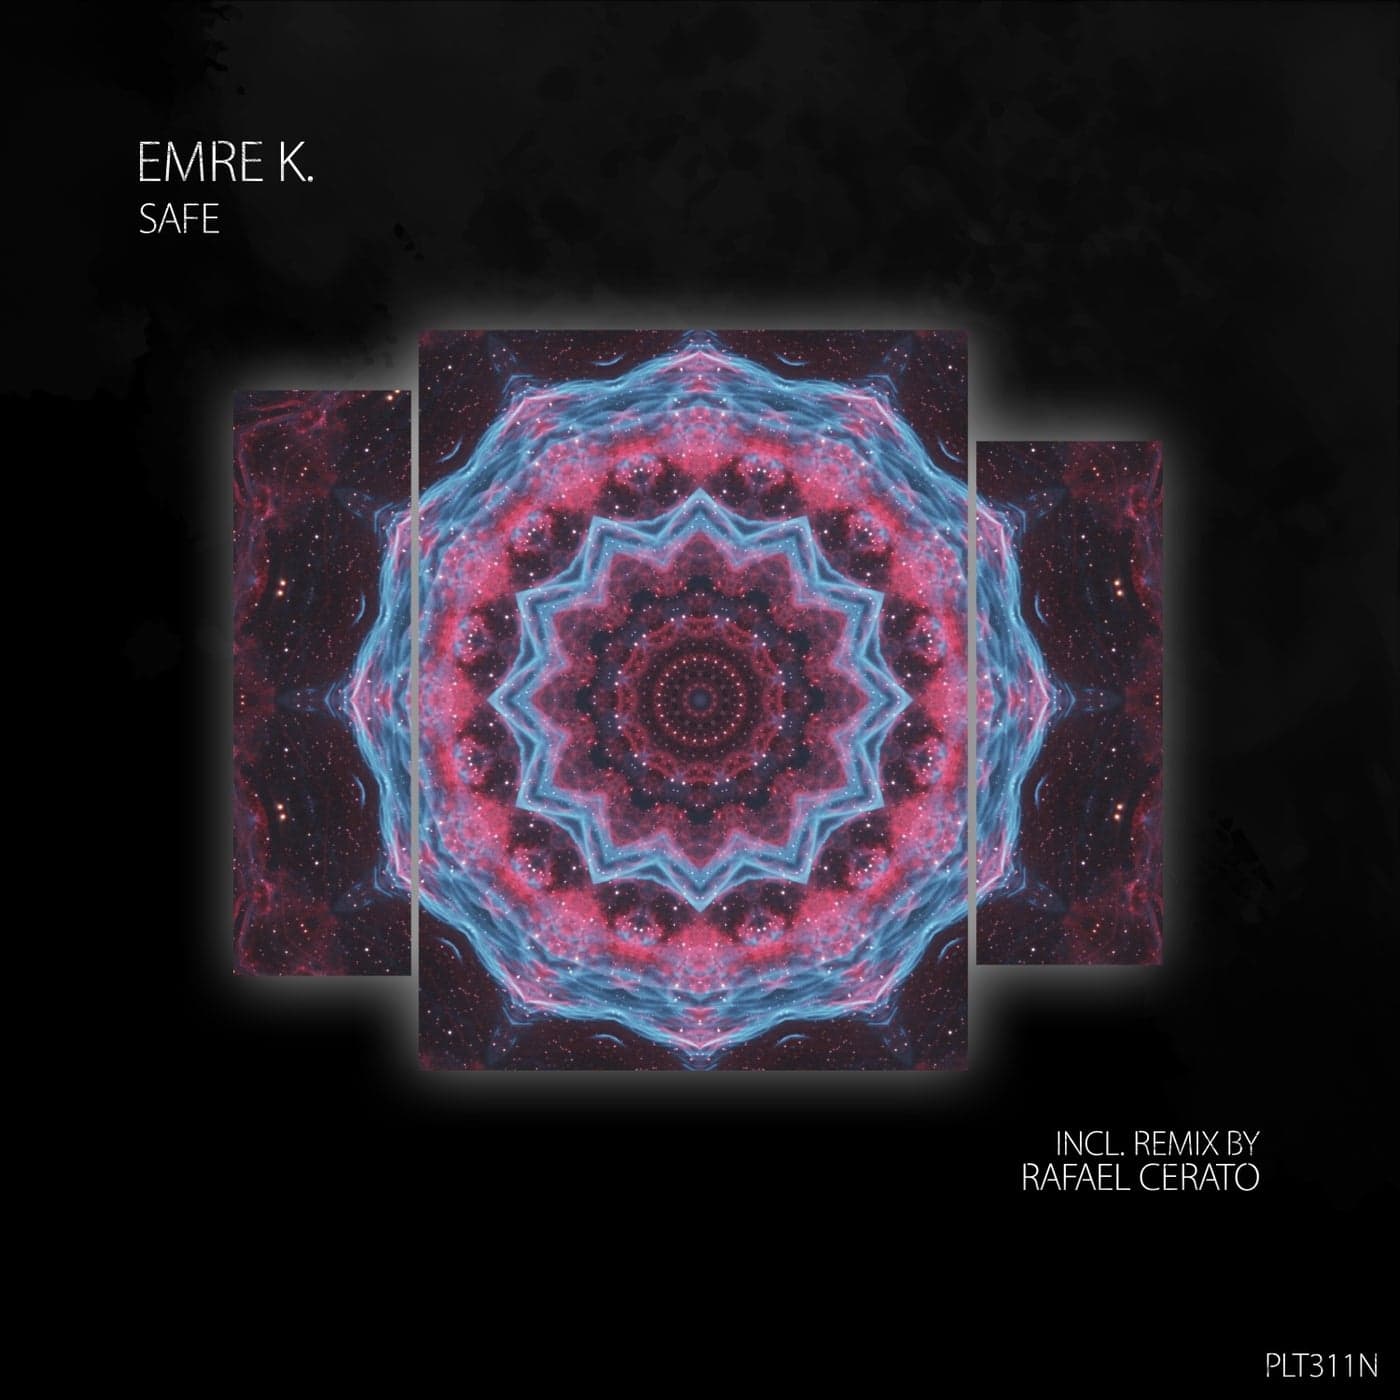 image cover: Emre K. - Safe on Polyptych Noir